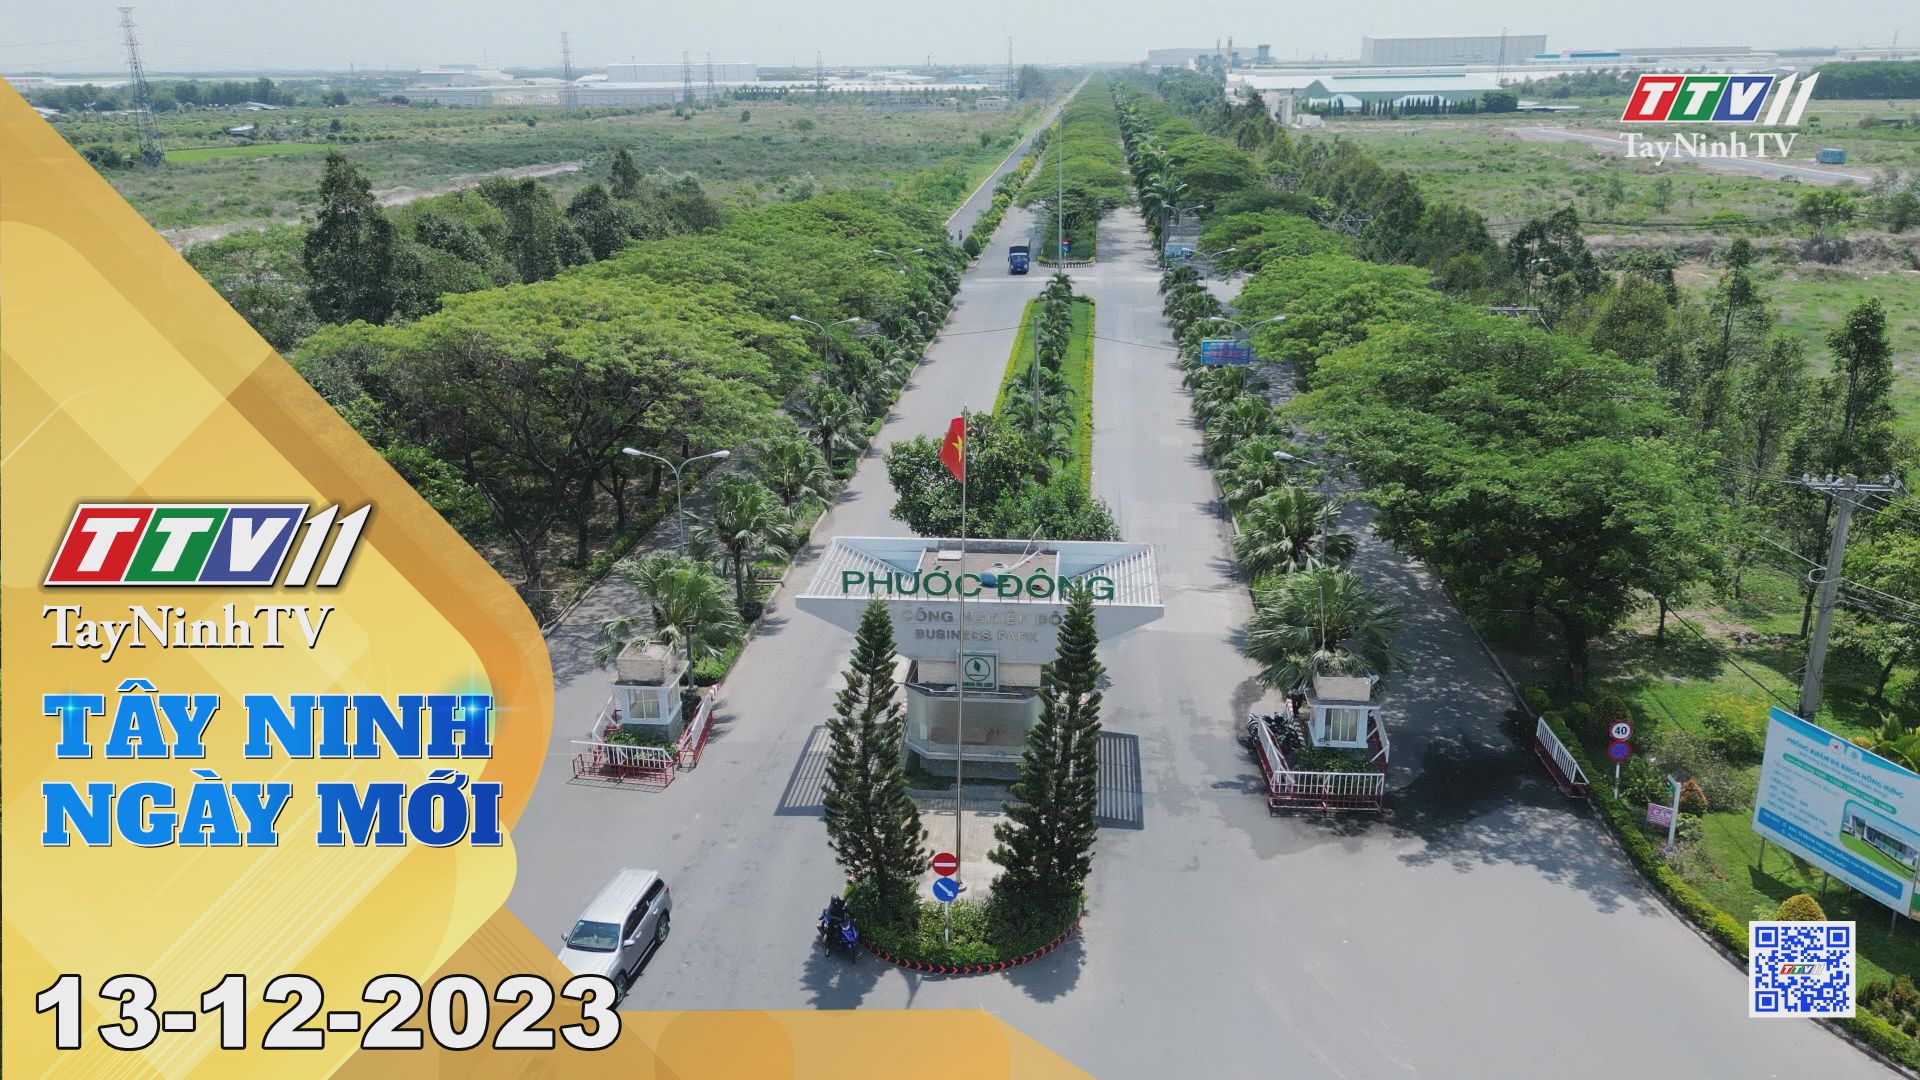 Tây Ninh ngày mới 13-12-2023 | Tin tức hôm nay | TayNinhTV